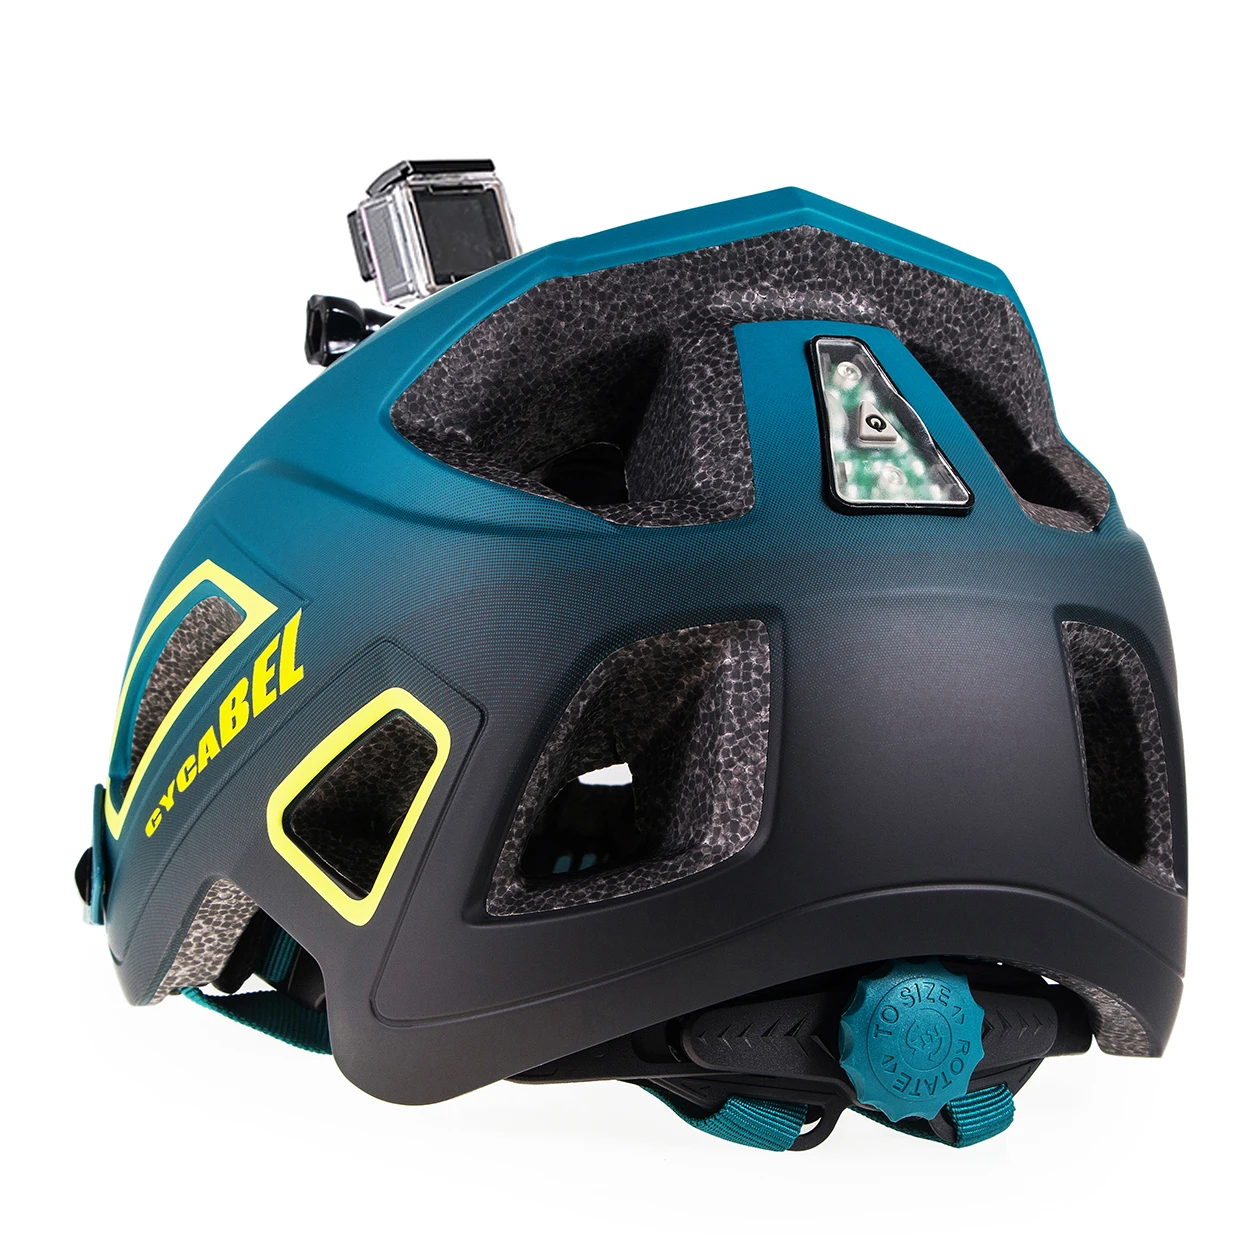 Велосипедный шлем для горного велосипеда со светодиодными лампами, держатель для камеры Gopro, защитная крышка для шлема для гоночного шоссейного велосипеда, занятий спортом на открытом воздухе